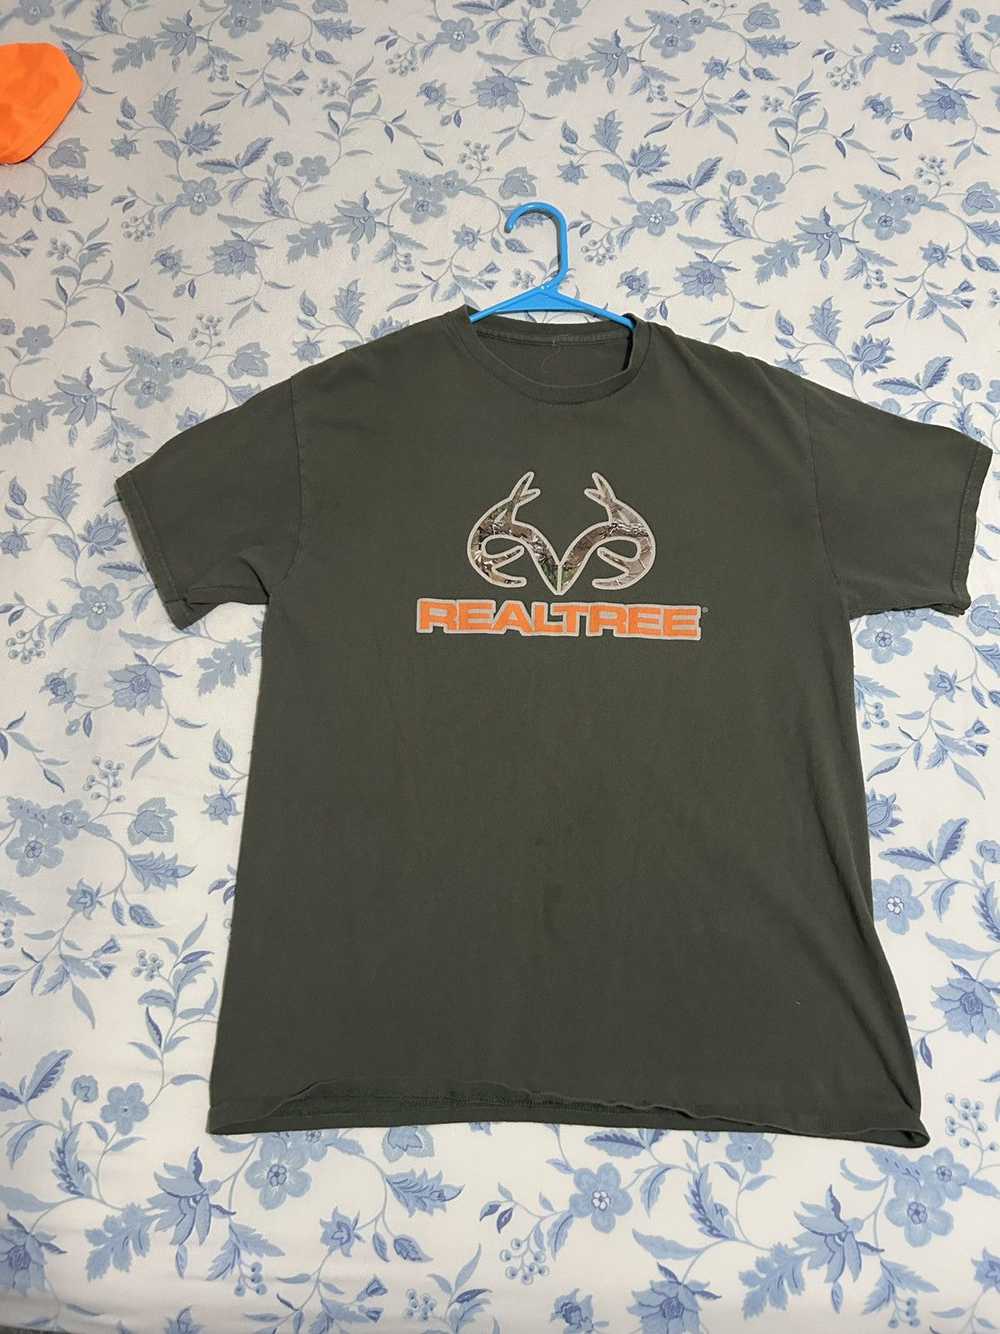 Realtree Realtree t-shirt - image 1